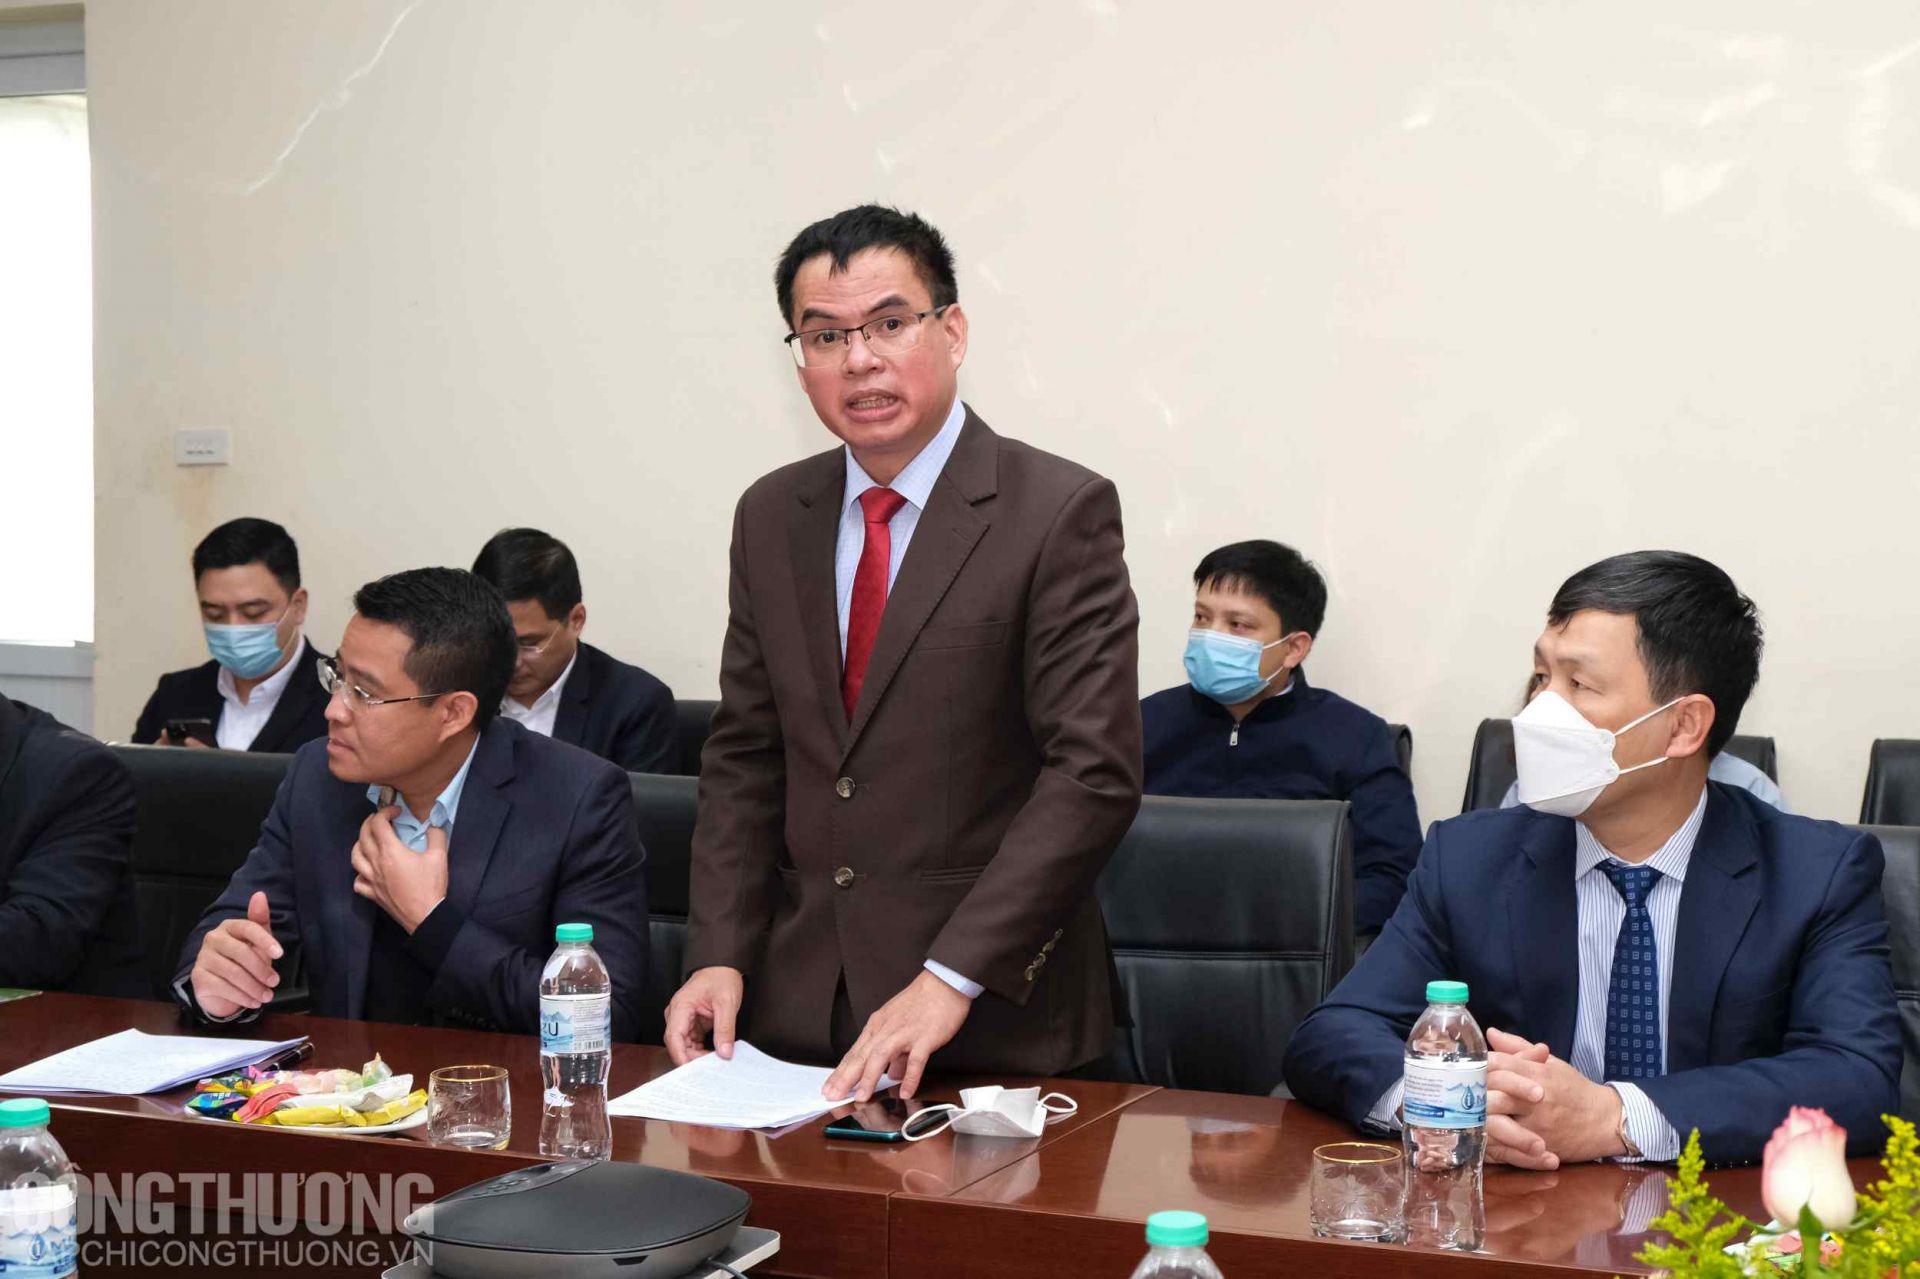 Ông Nguyễn Viết Hiến - Thành viên HĐTV, Tổng giám đốc Công ty TNHH MTV Đạm Ninh Bình cho hay năm 2021, Công ty đã giảm lỗ 1.153 tỷ đồng so với kế hoạch năm 2021 và giảm lỗ 1.634 tỷ đồng so với thực hiện năm 2020